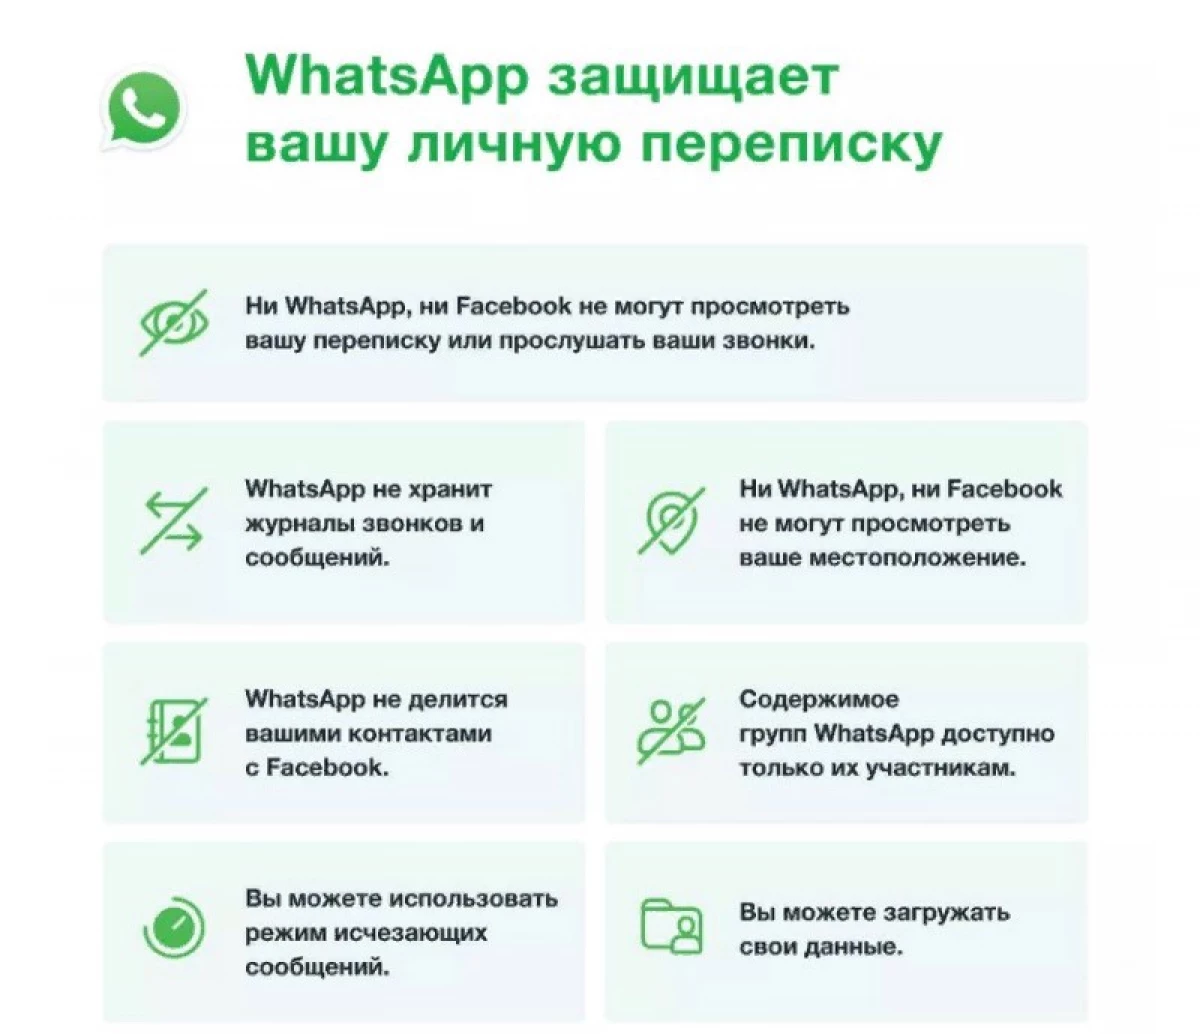 WhatsApp داده های کاربر را از فیس بوک به اشتراک می گذارد. مجوز شما نمی پرسد 6388_5